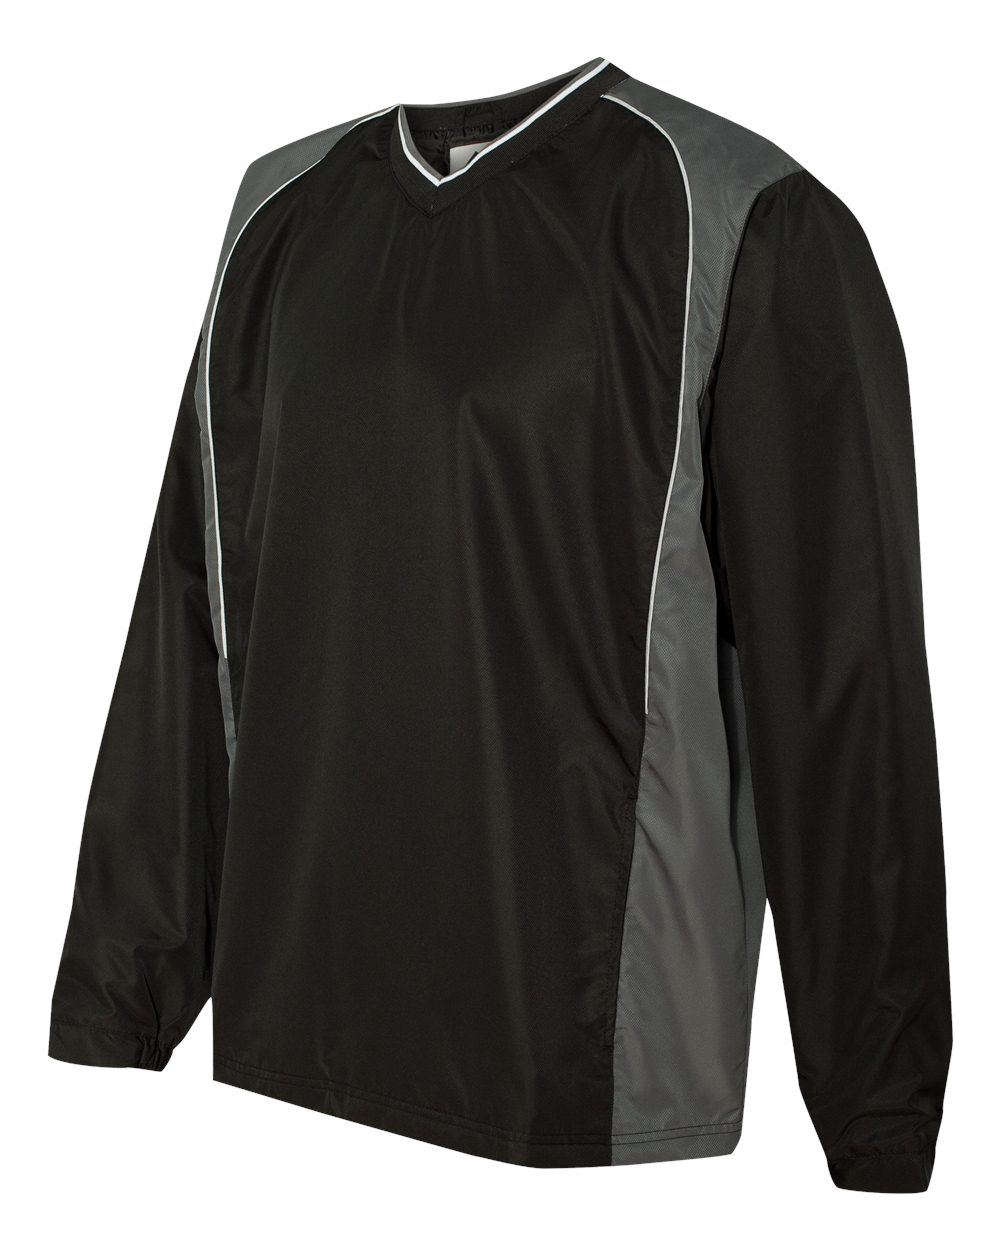 Augusta Sportswear Roar Diamond Tech V-Neck Windshirt - 3745